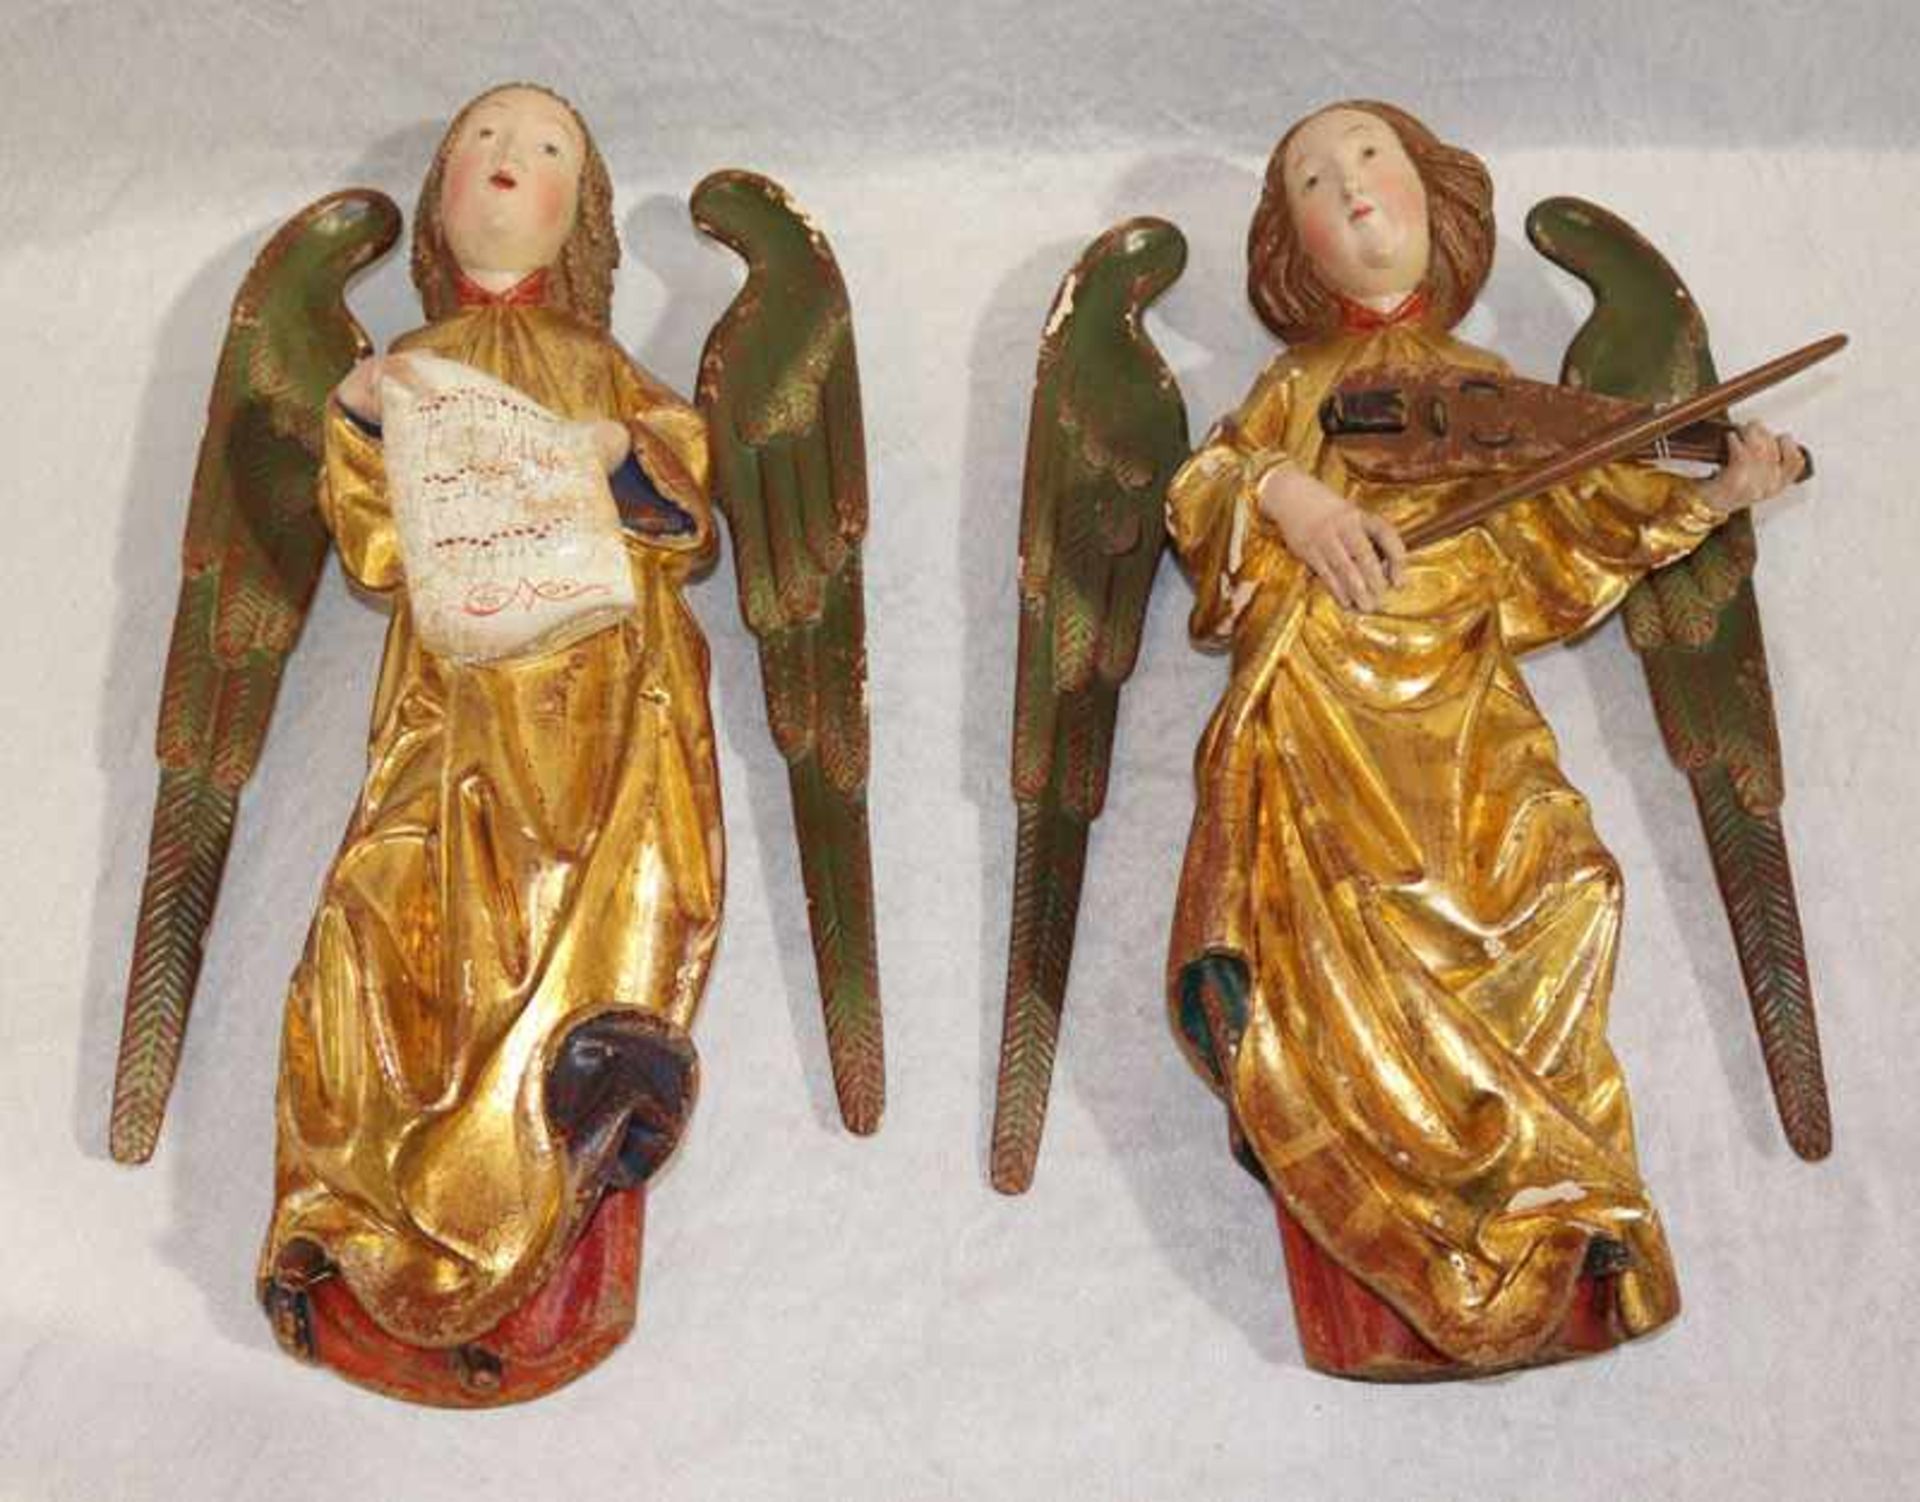 2 Holzskulpturen 'Musizierender und singender Engel', farbig gefaßt, fassung teils beschädigt, 19.